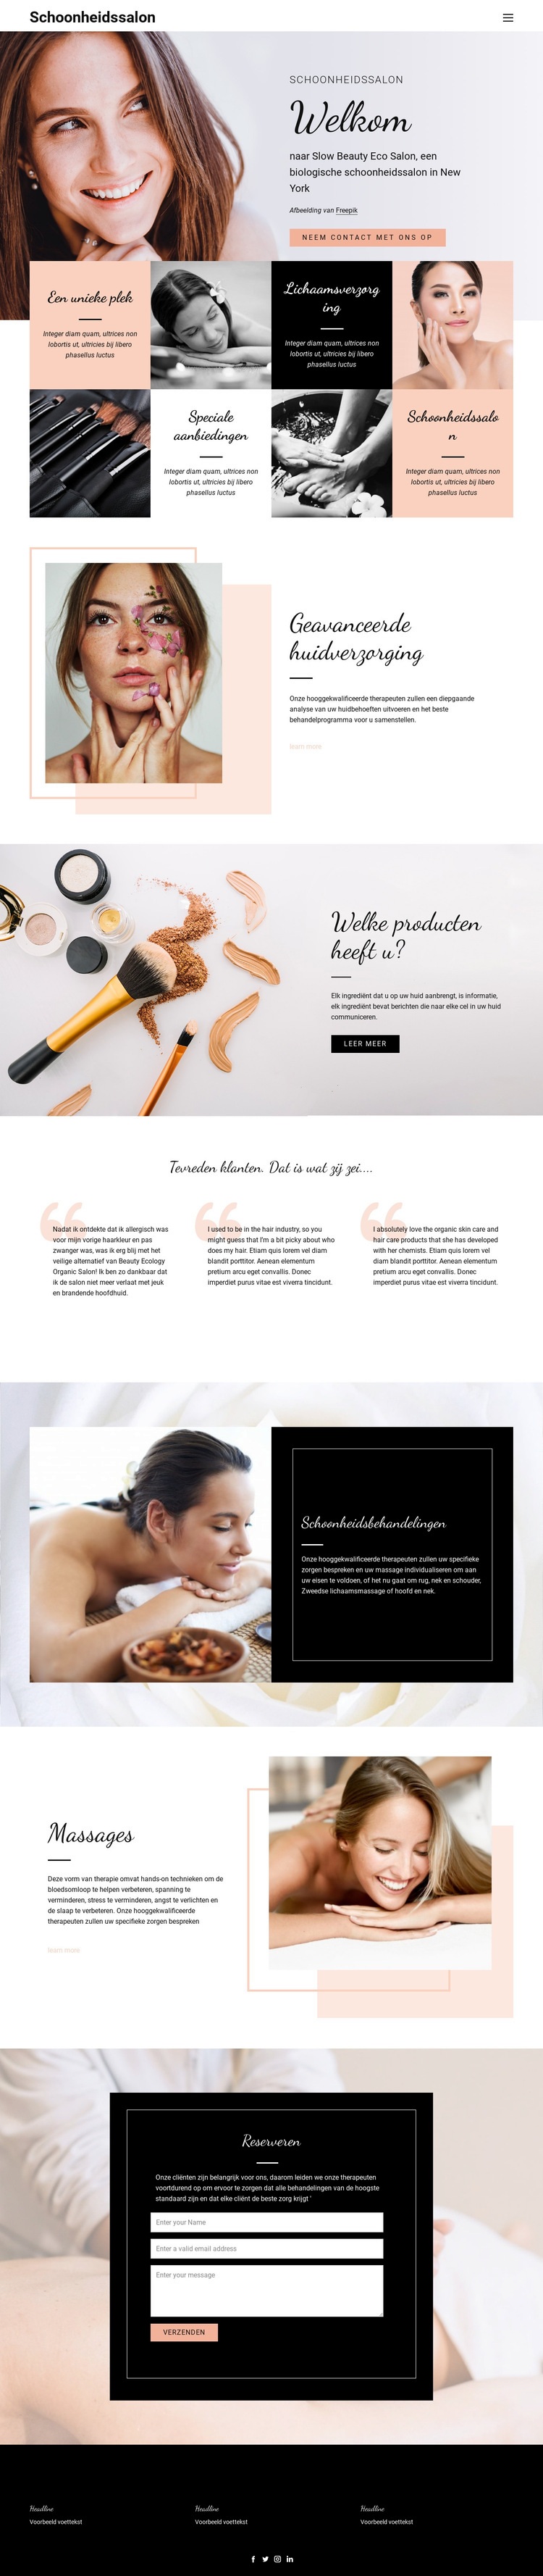 Haar-, nagel- en schoonheidssalon Website ontwerp